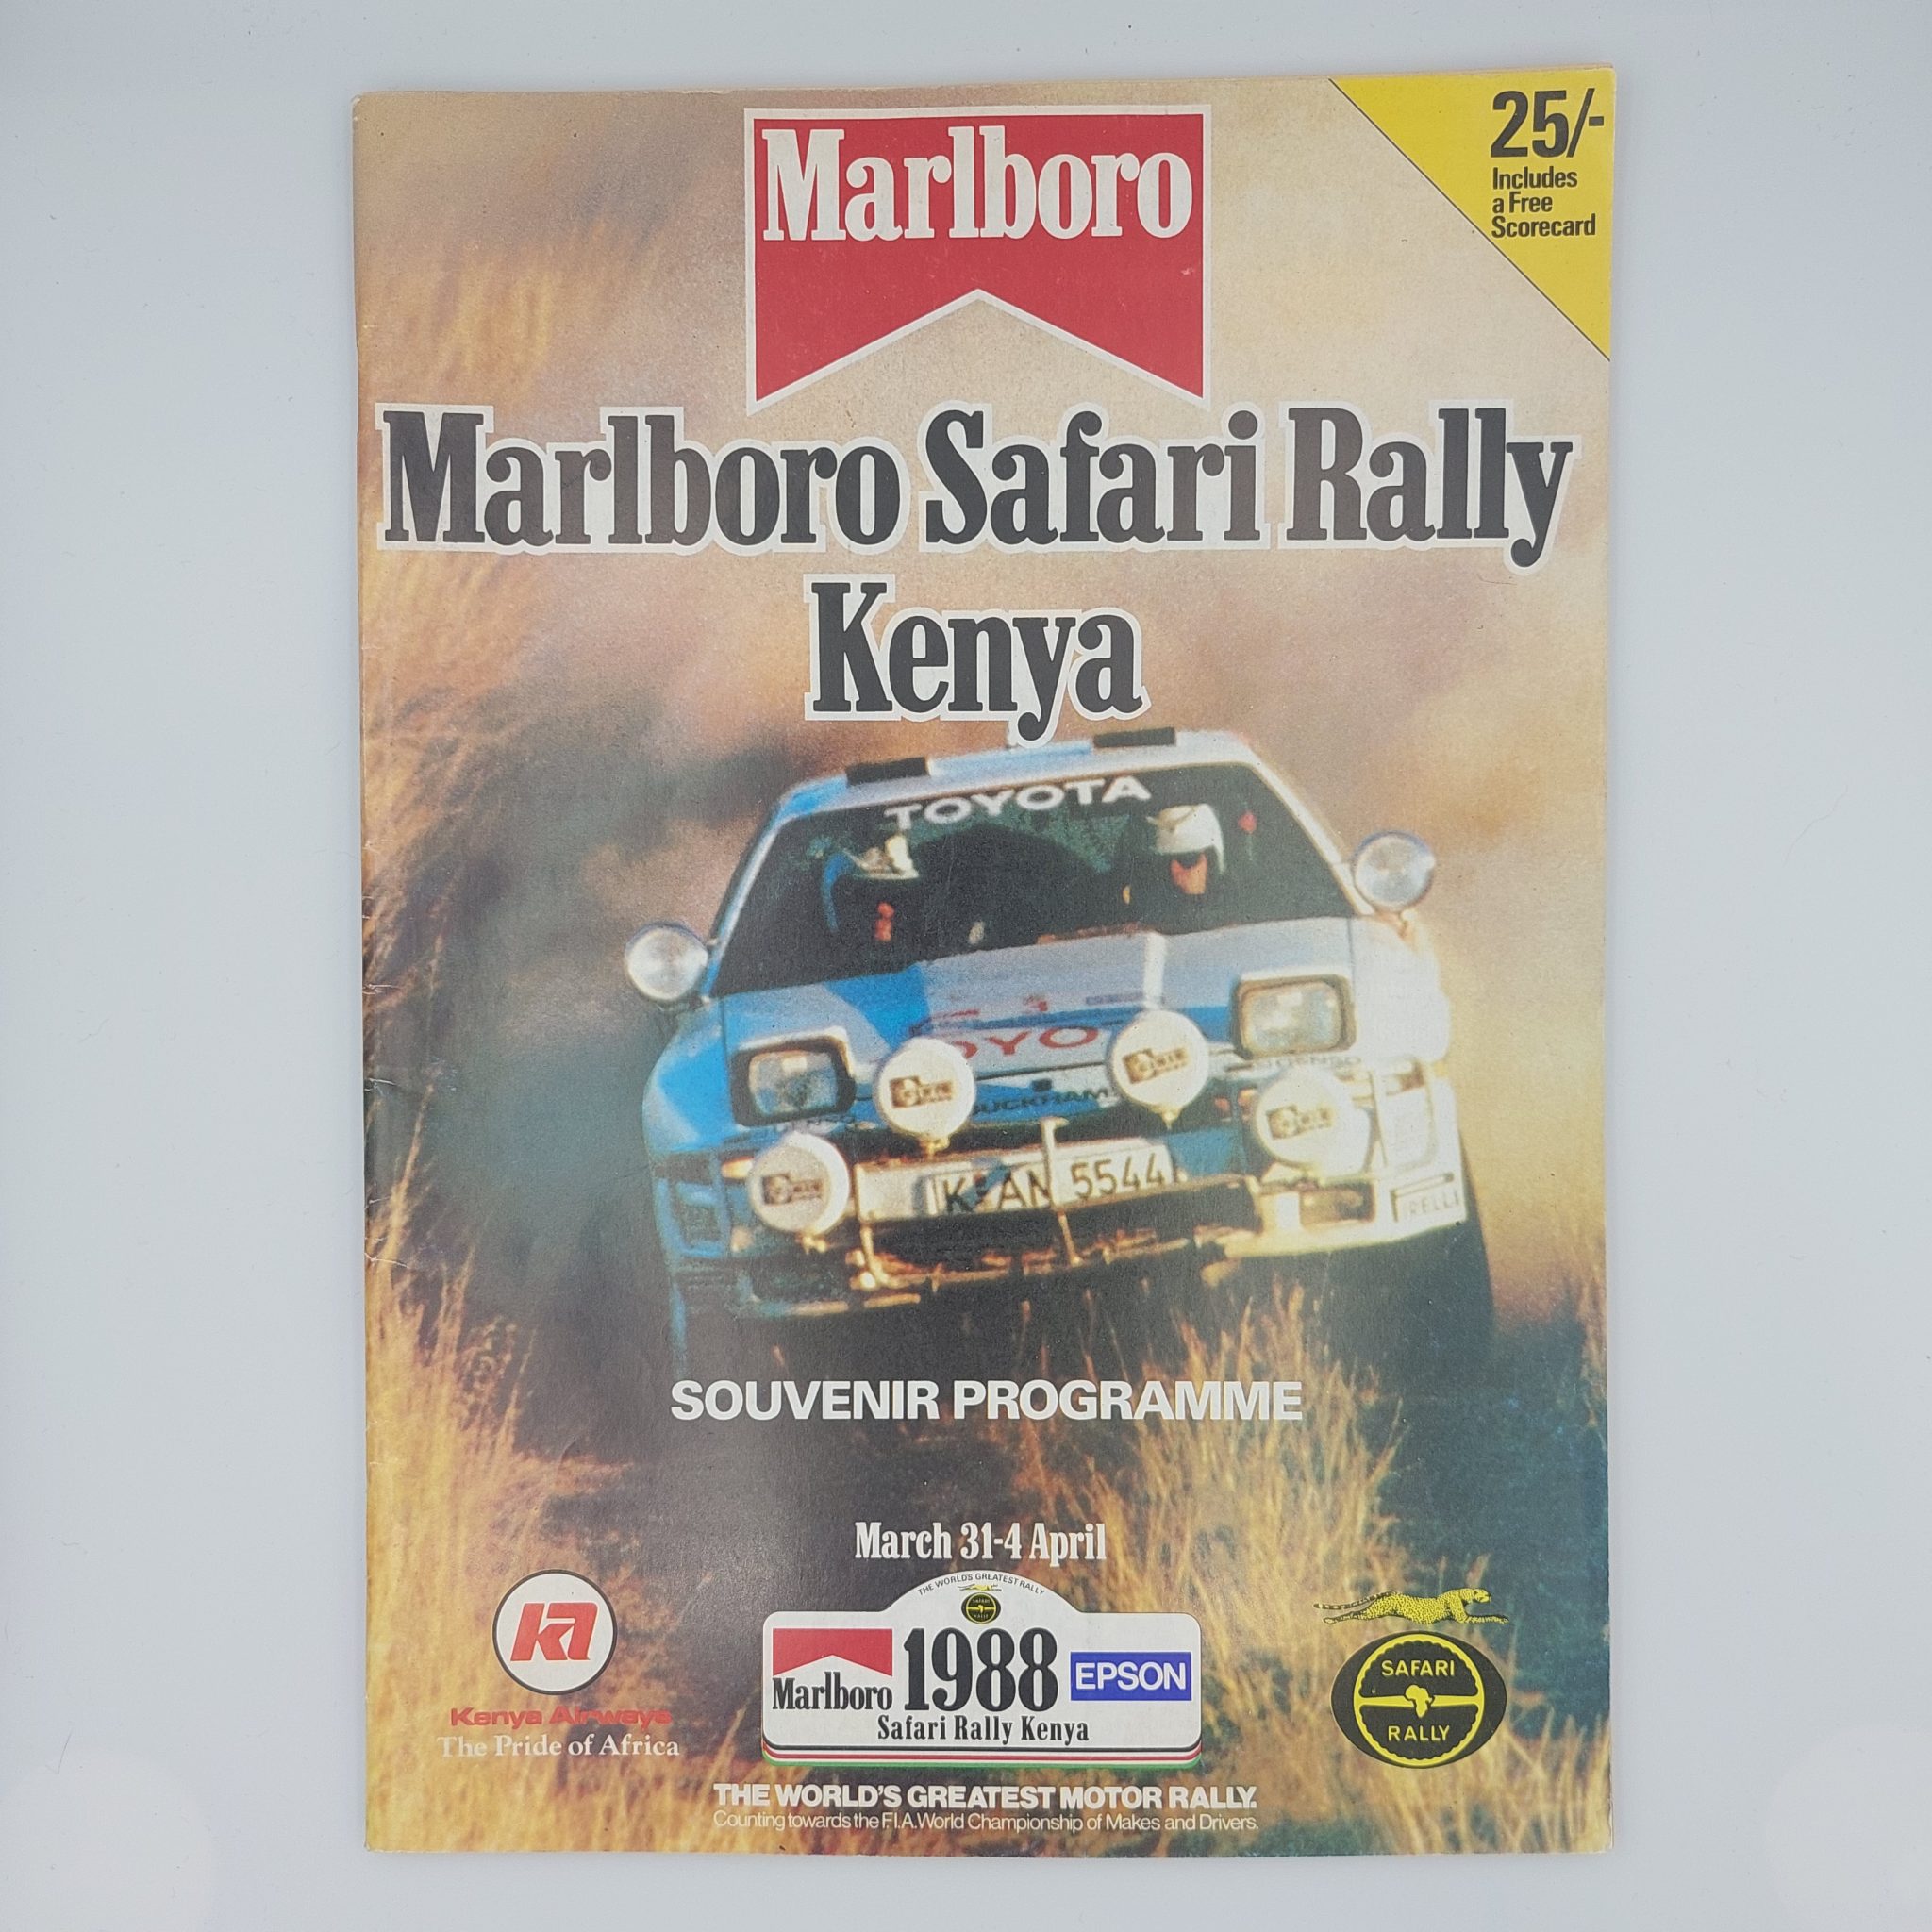 safari rally programme